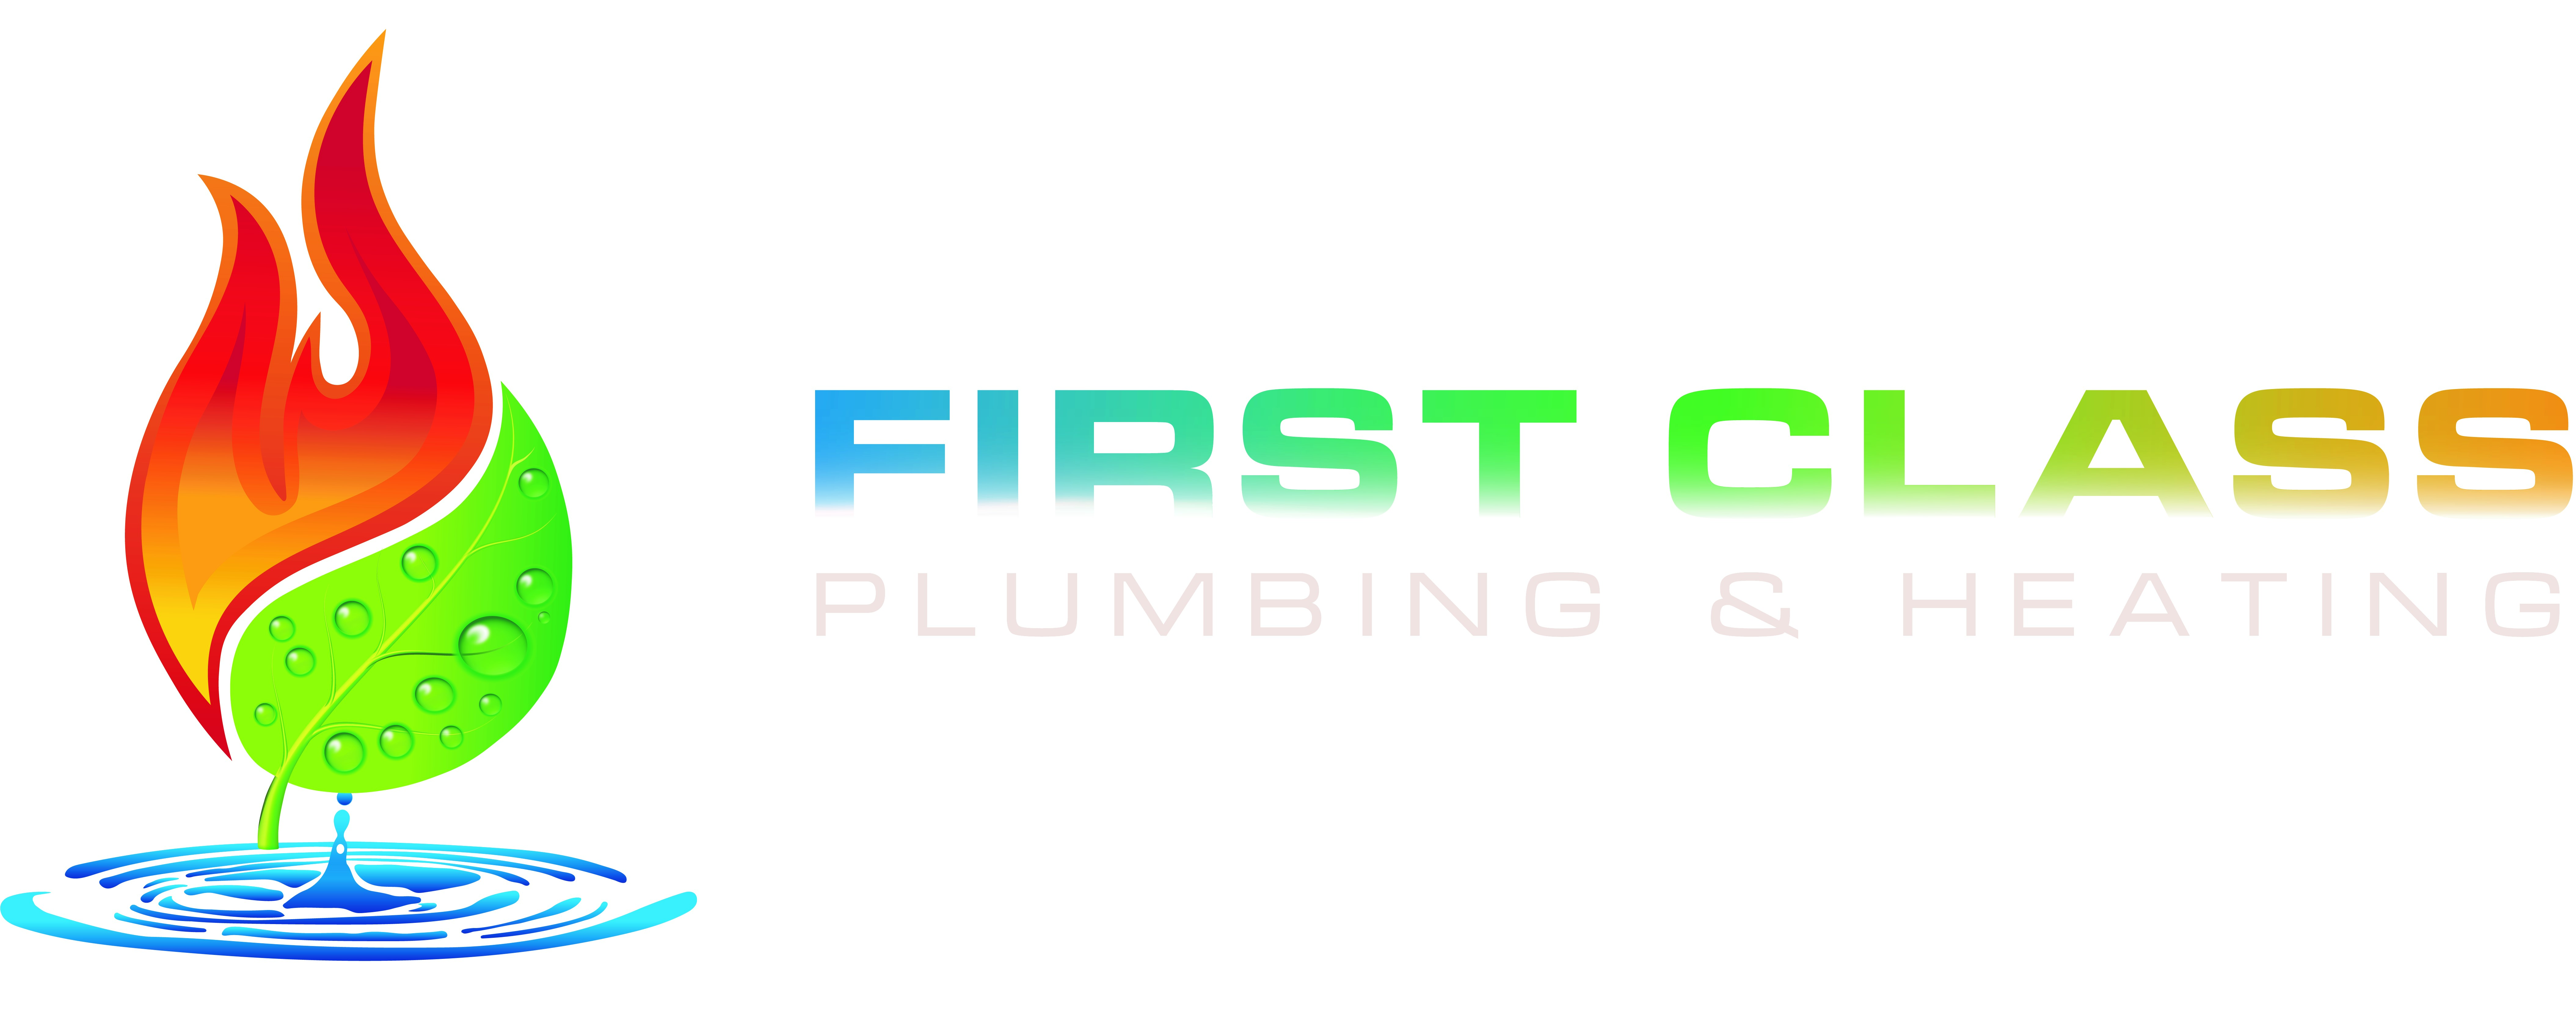 First Class Plumbing & Heating Ltd